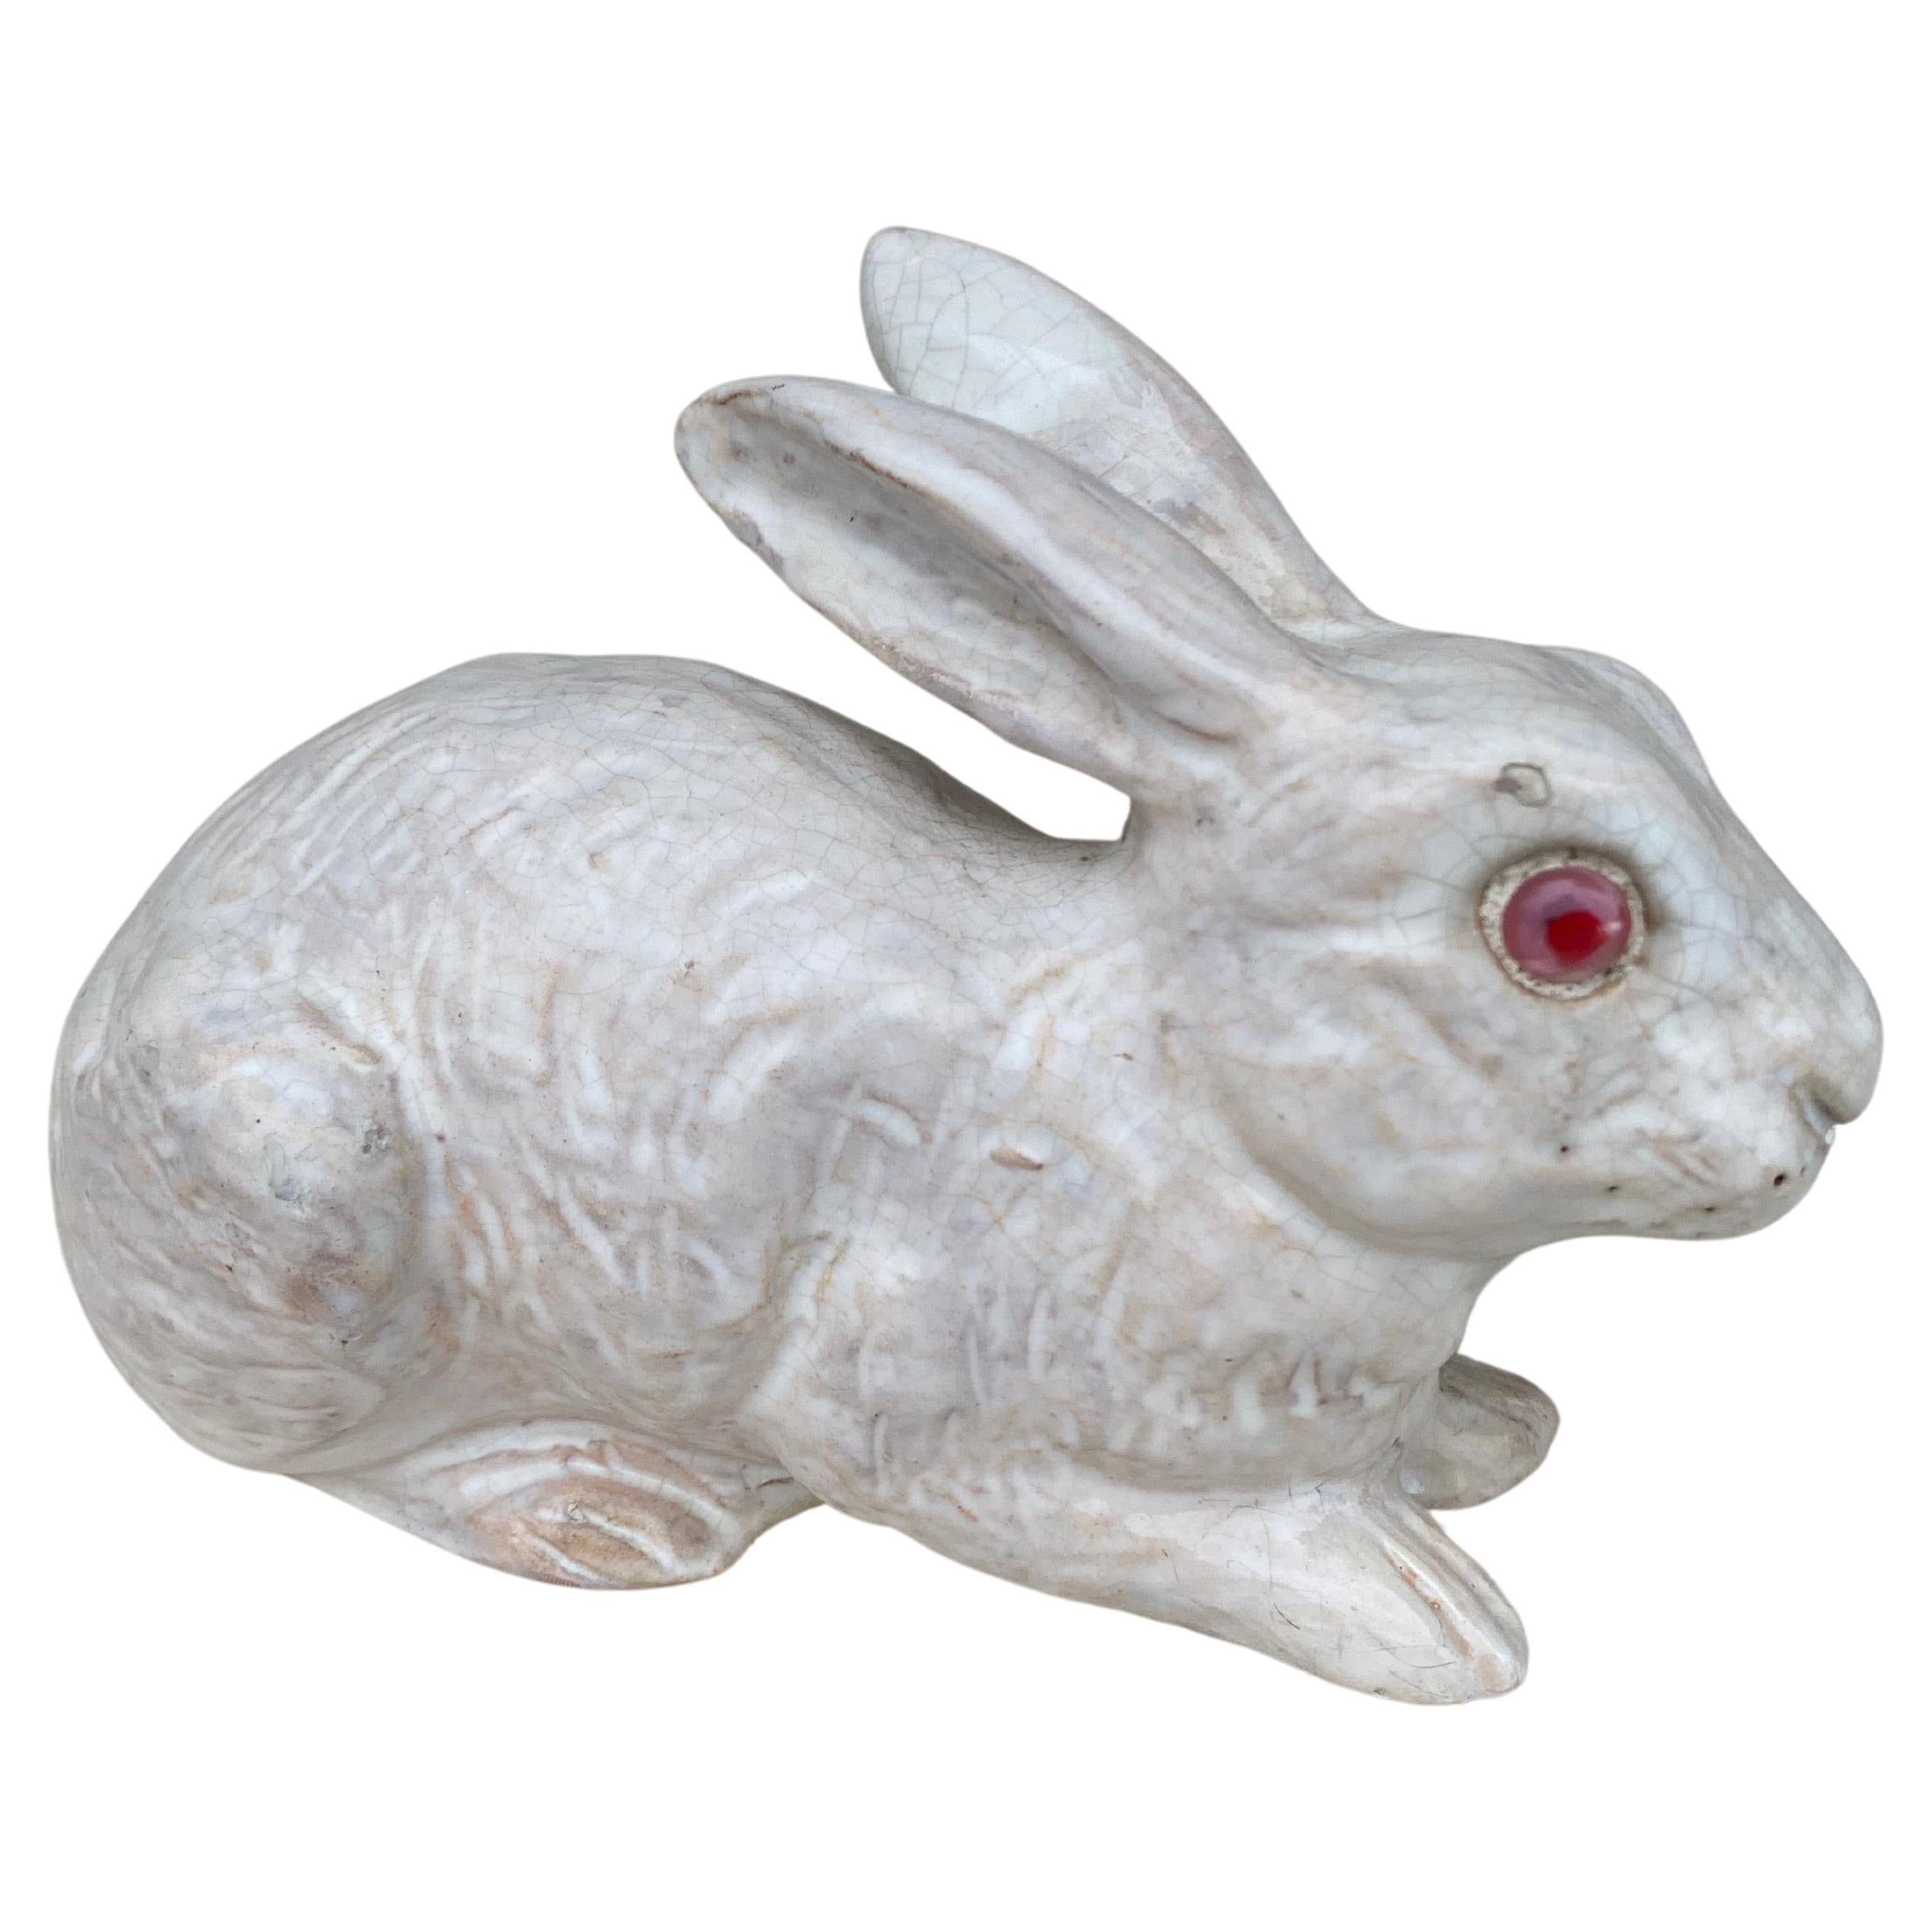 Französisches Kaninchen aus weißer Terrakotta, signiert Bavent, um 1890.
(Normandie).
Größe / Länge: 9 Zoll auf 4,5 Zoll, Höhe / 4,8 Zoll.